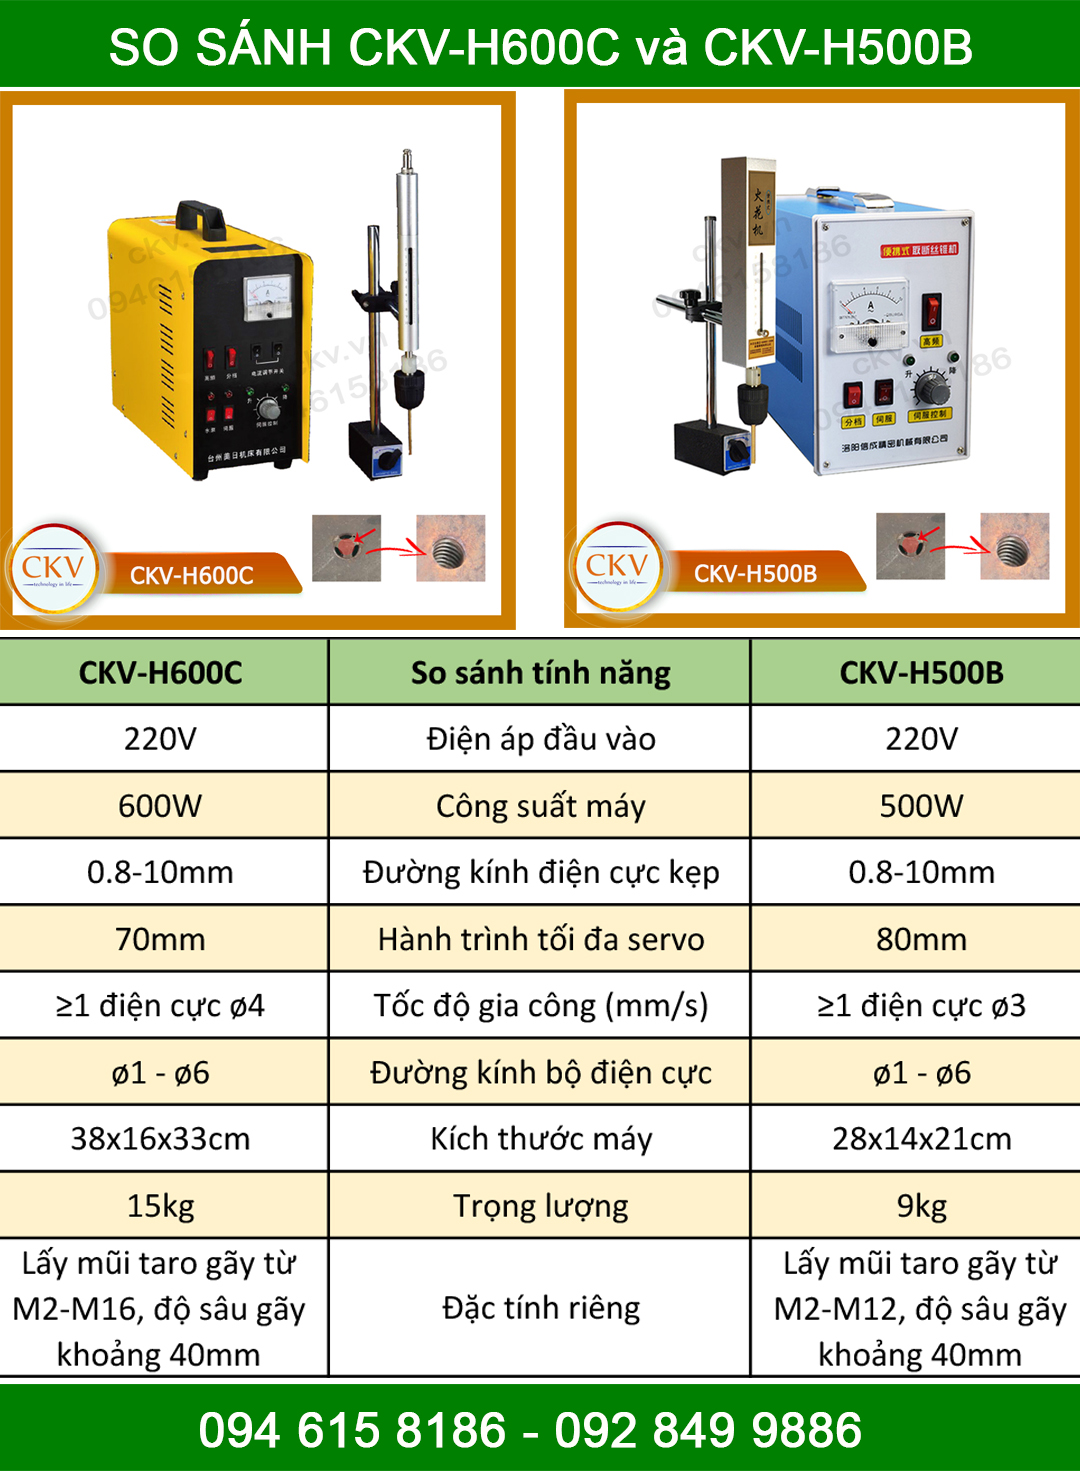 So sánh CKV-H600C và CKV-H500B